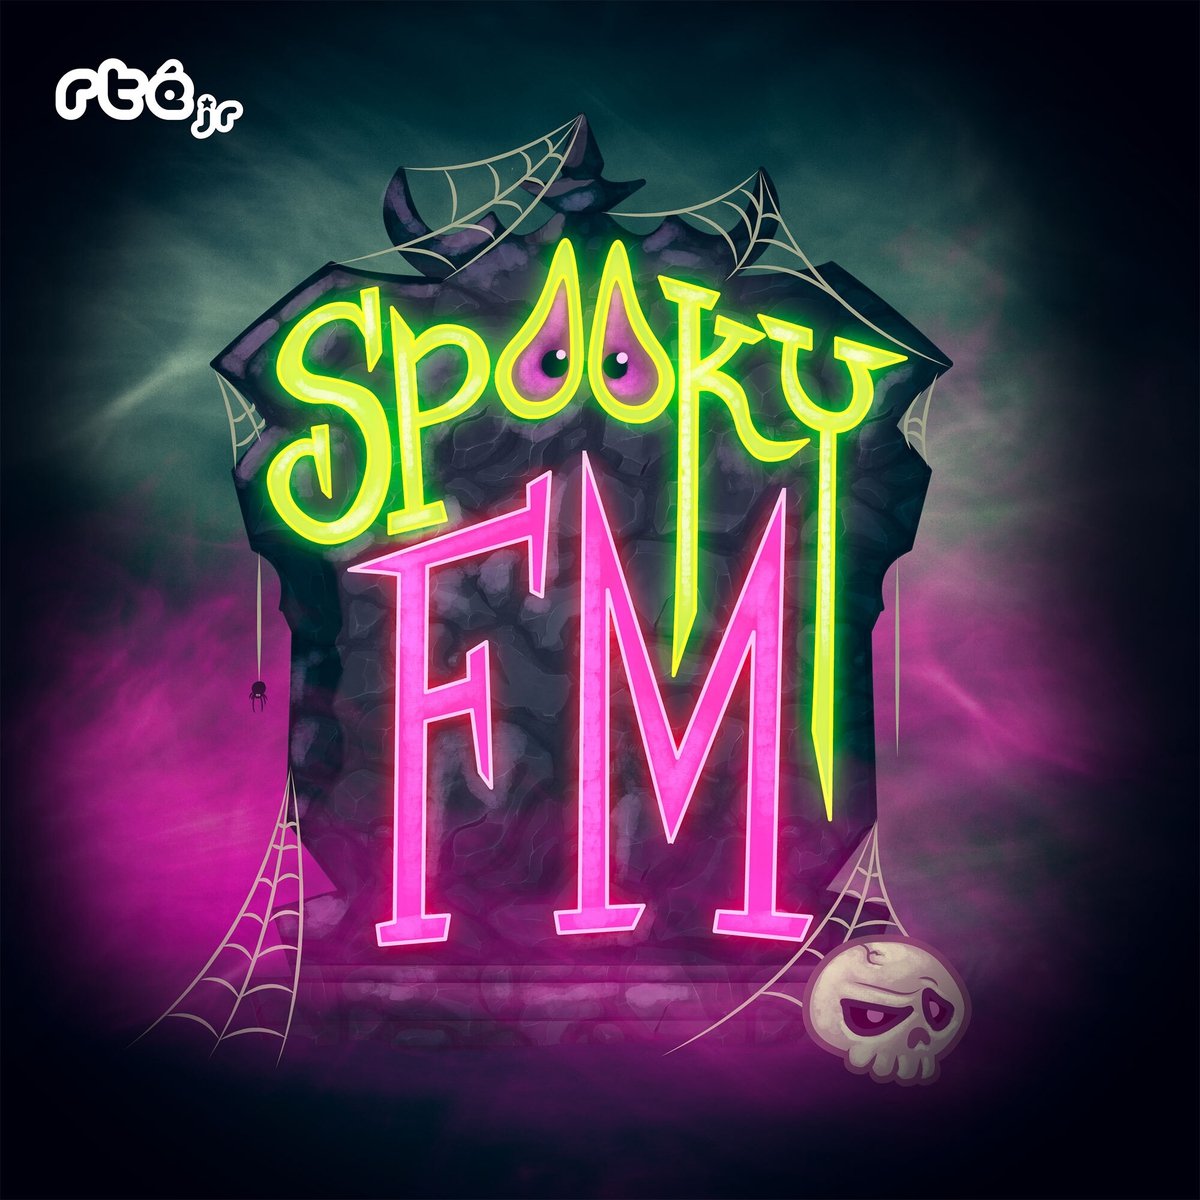 Spooky FM